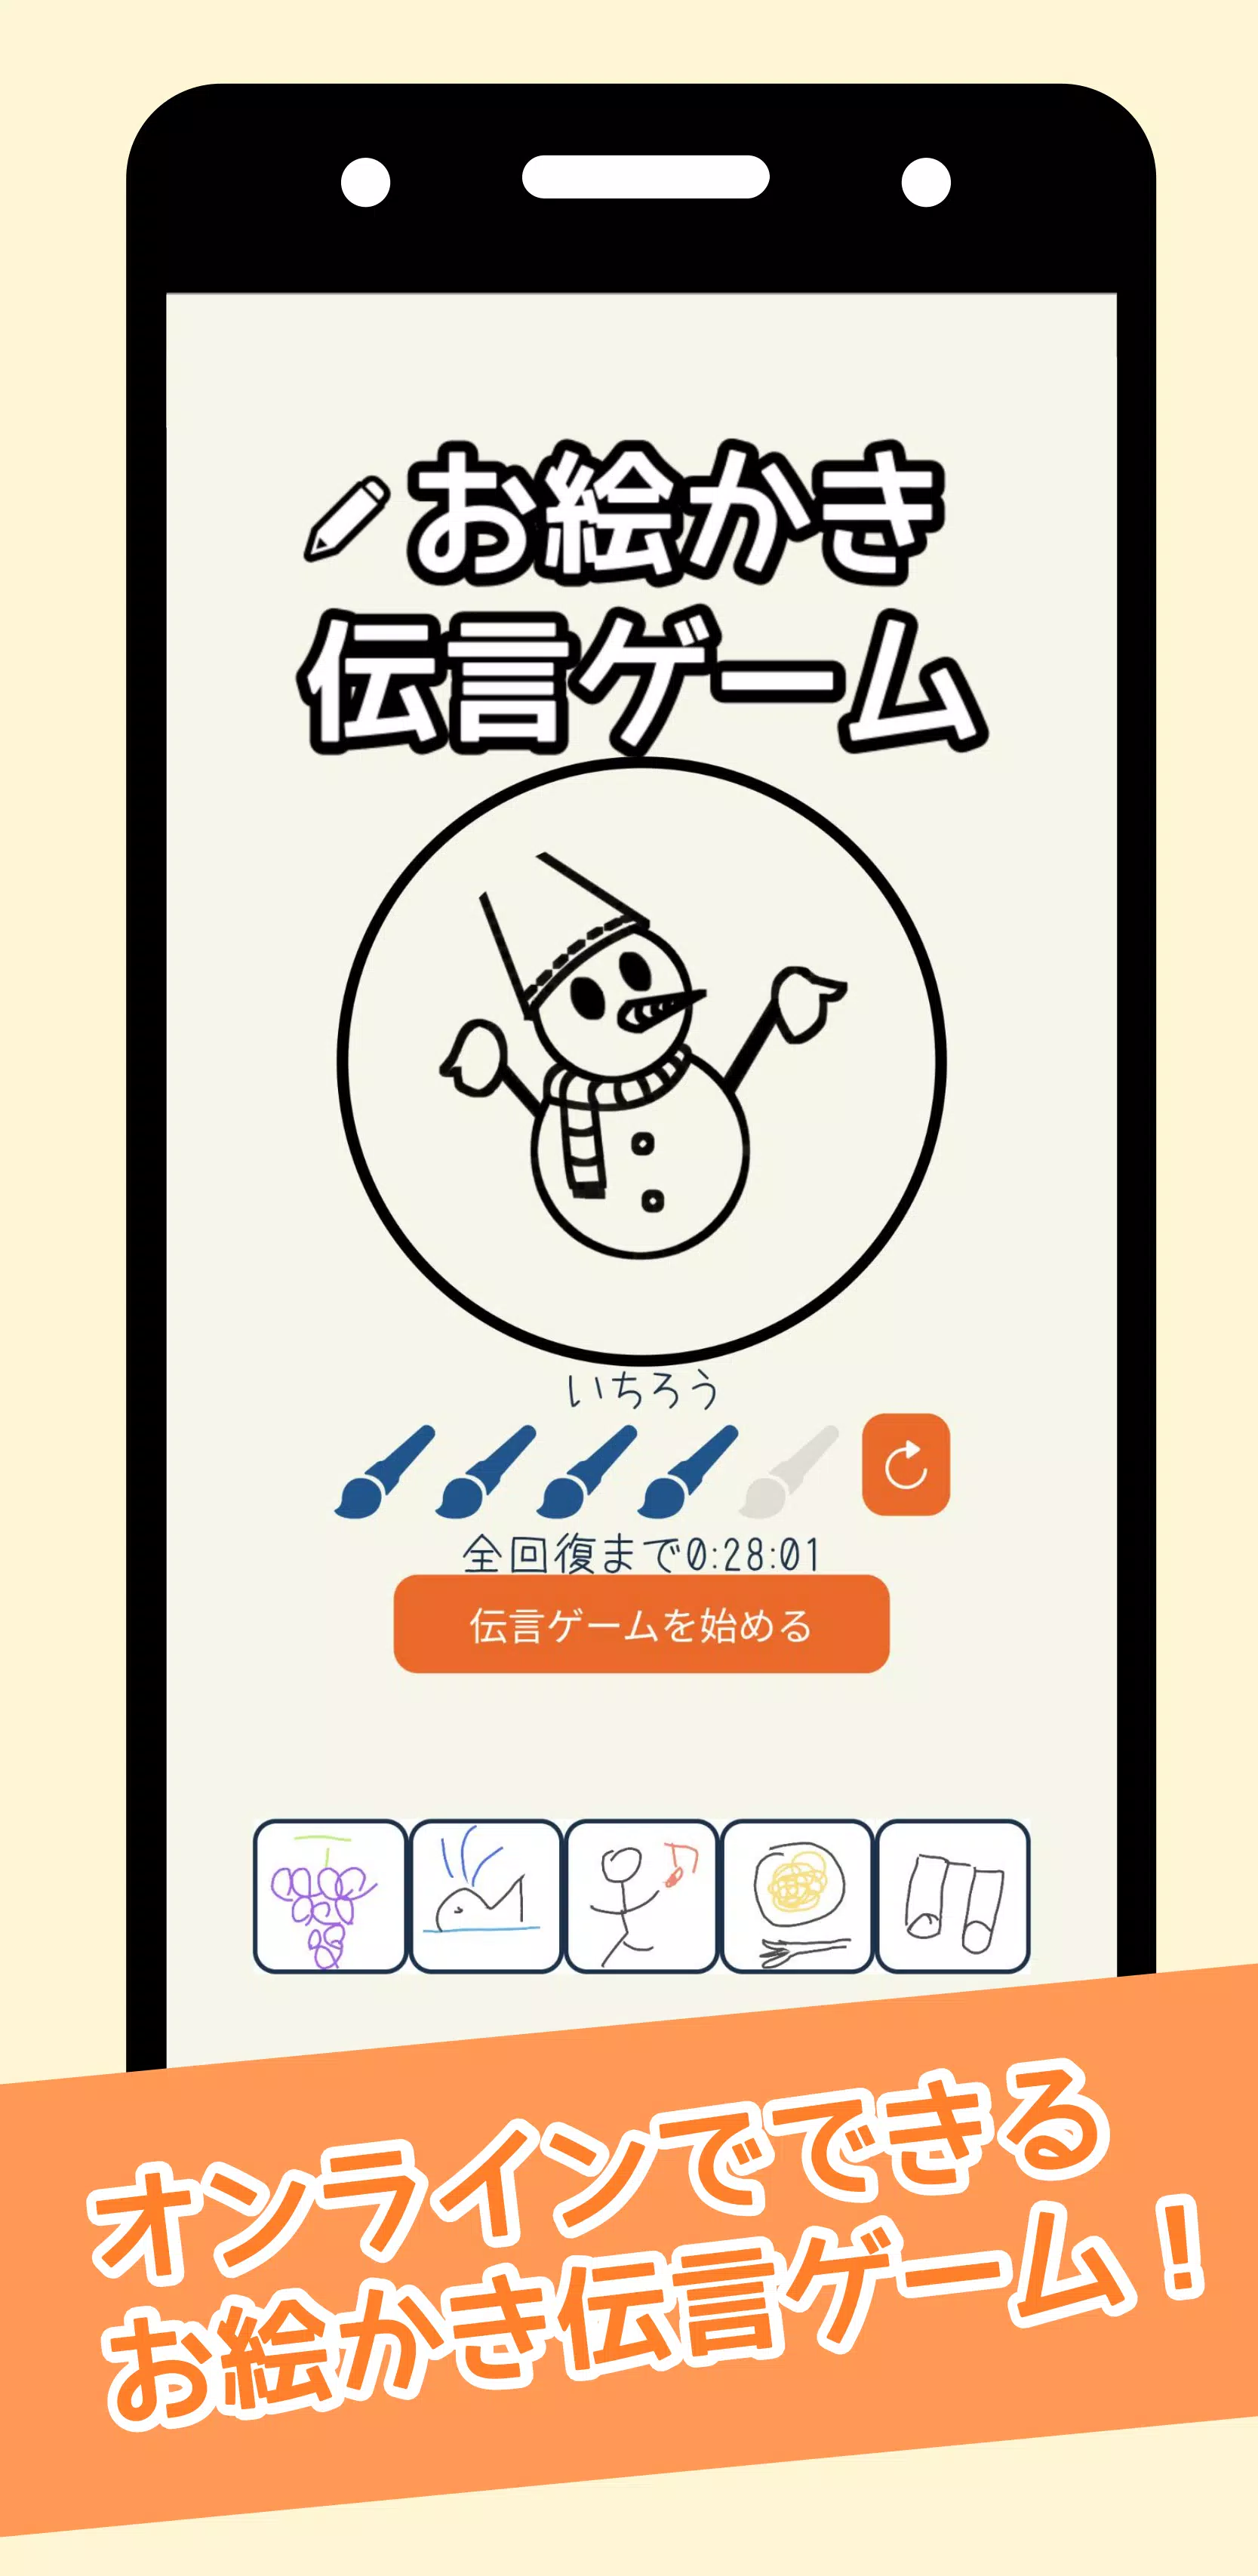 お絵描き伝言ゲーム For Android Apk Download